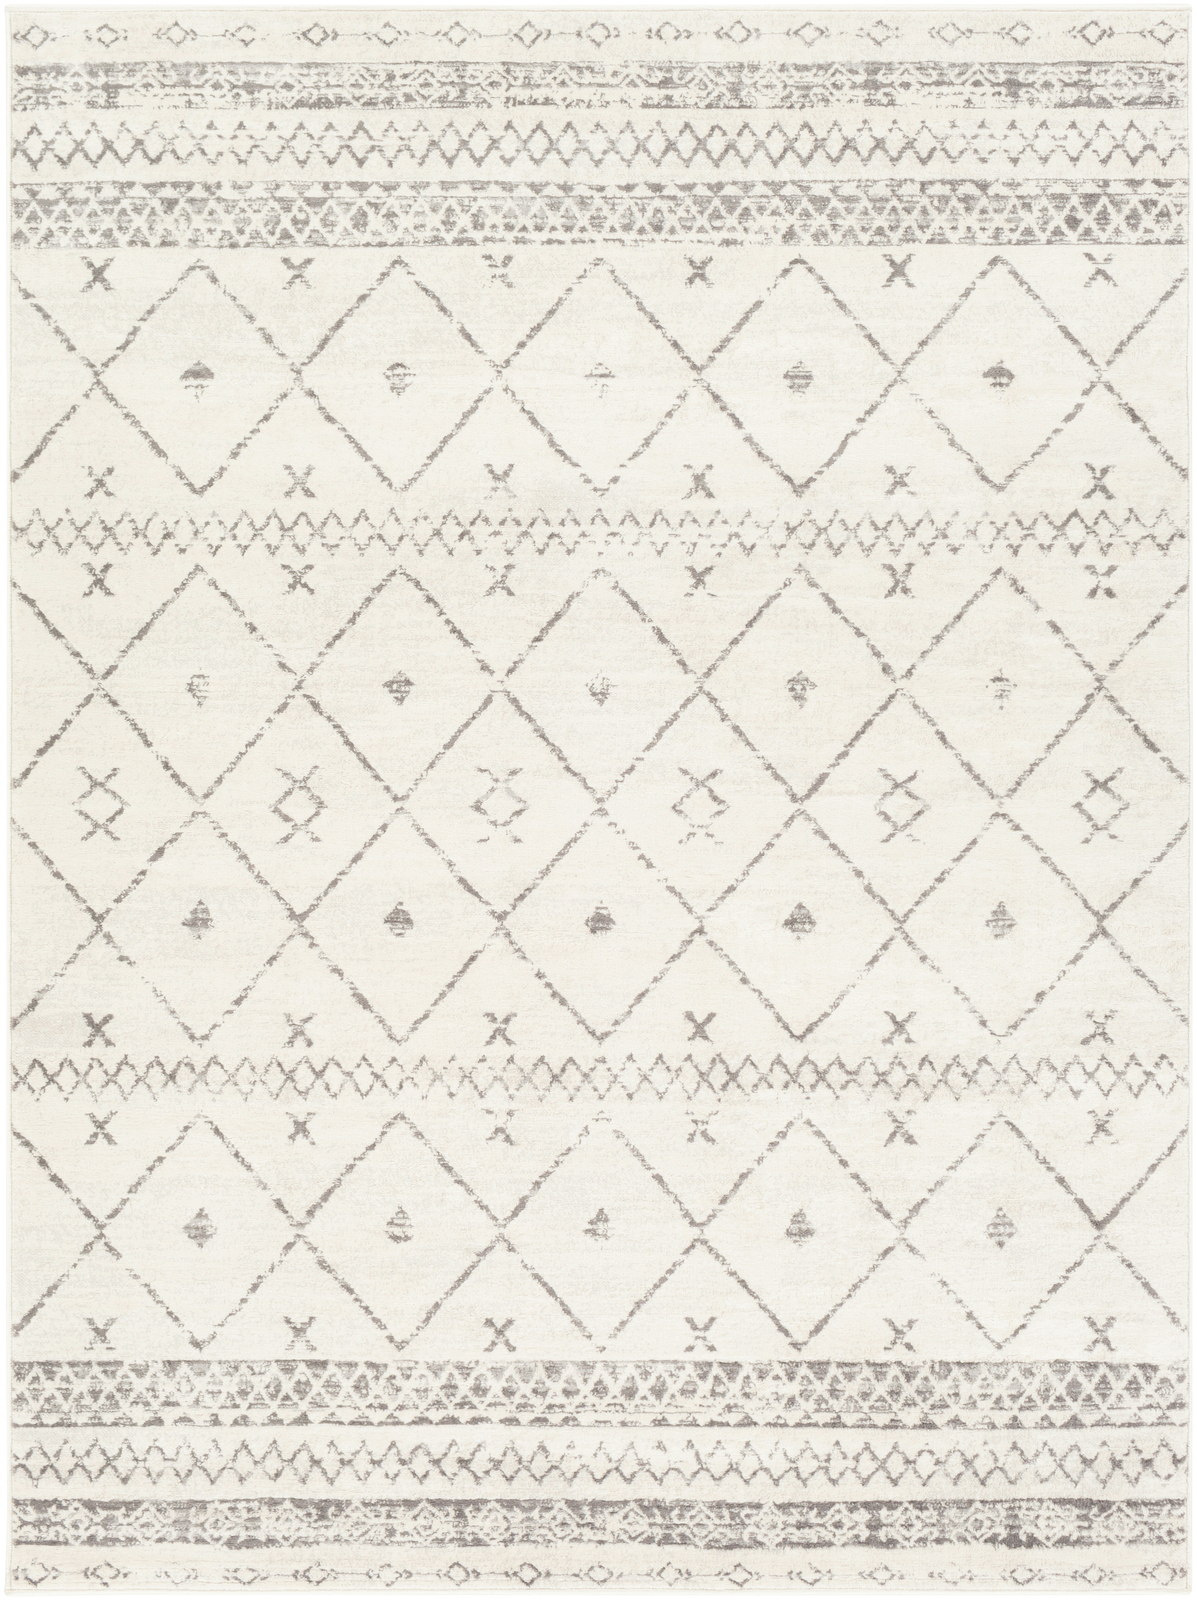 Tapis Géométrique, Blanc et Gris - 200x274cm